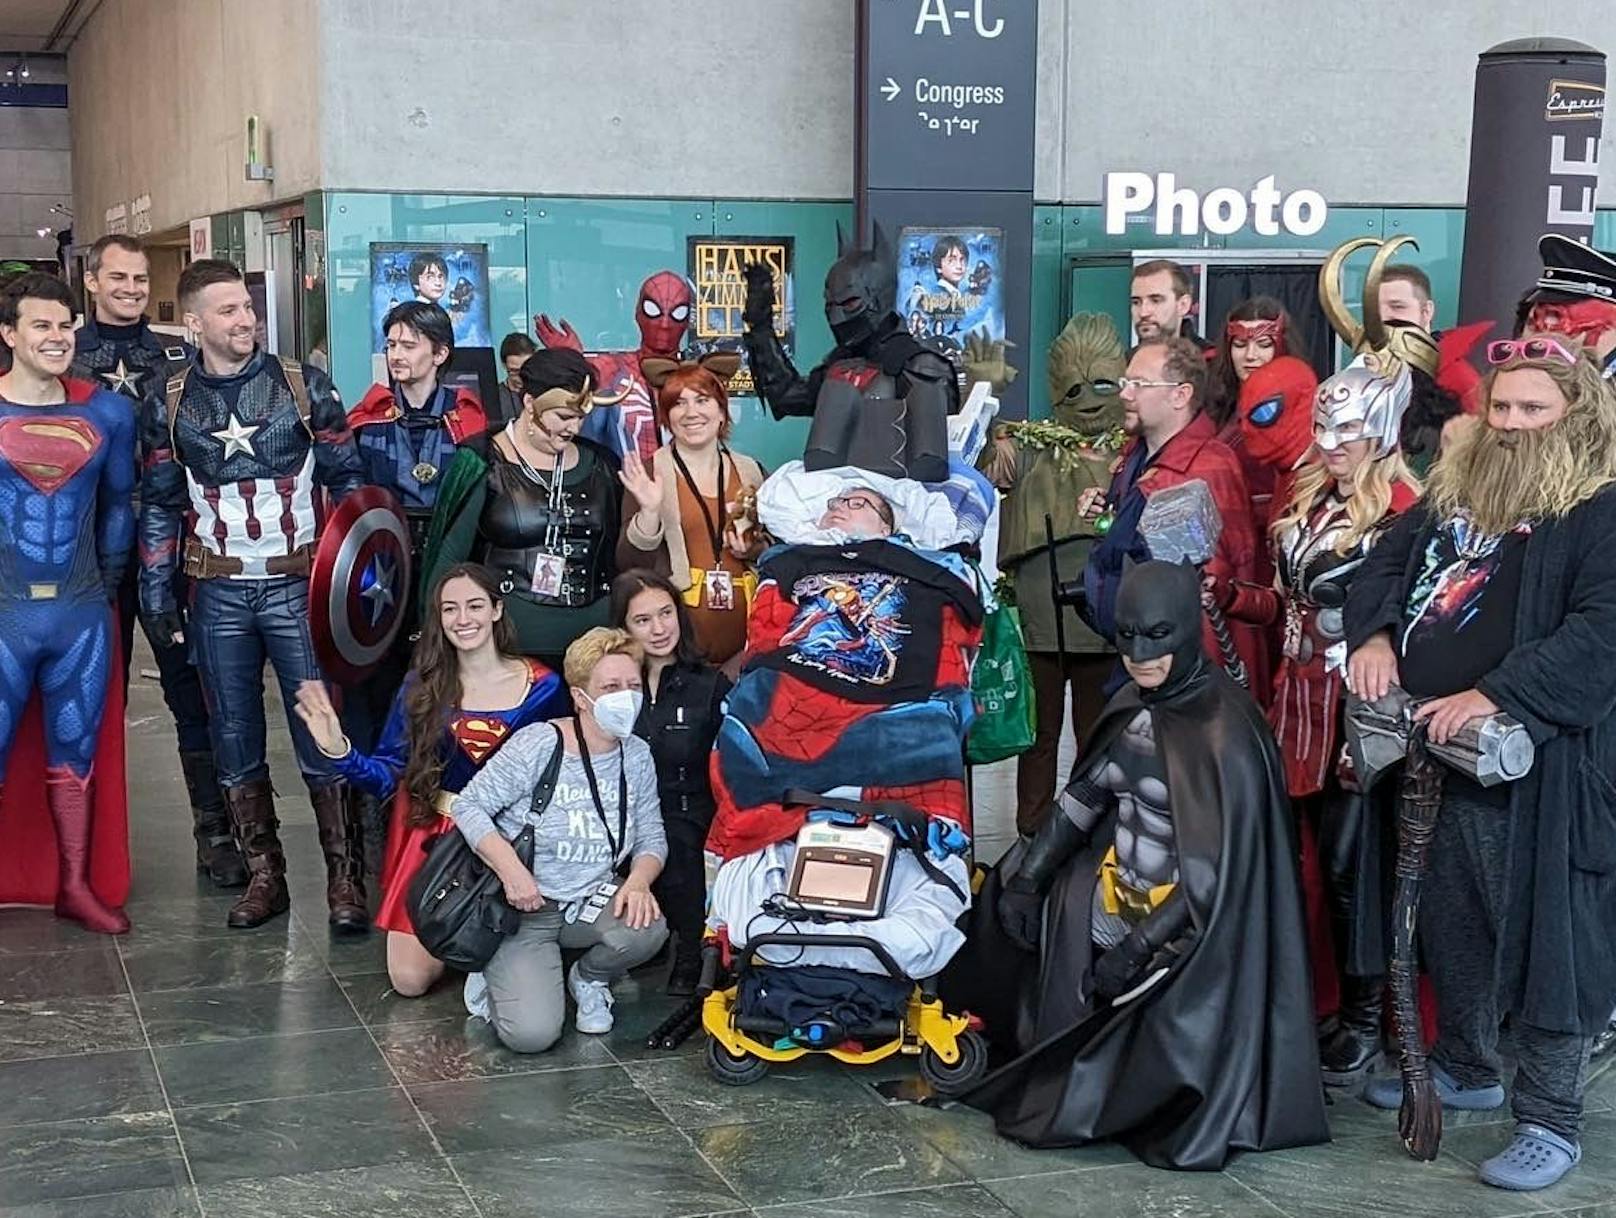 Ein besonderer Tag in Filips Leben: Der 15-jährige, der an einem Nervenleiden erkrankte, durfte – umgeben von "Avengers" – die Comic Con erleben.